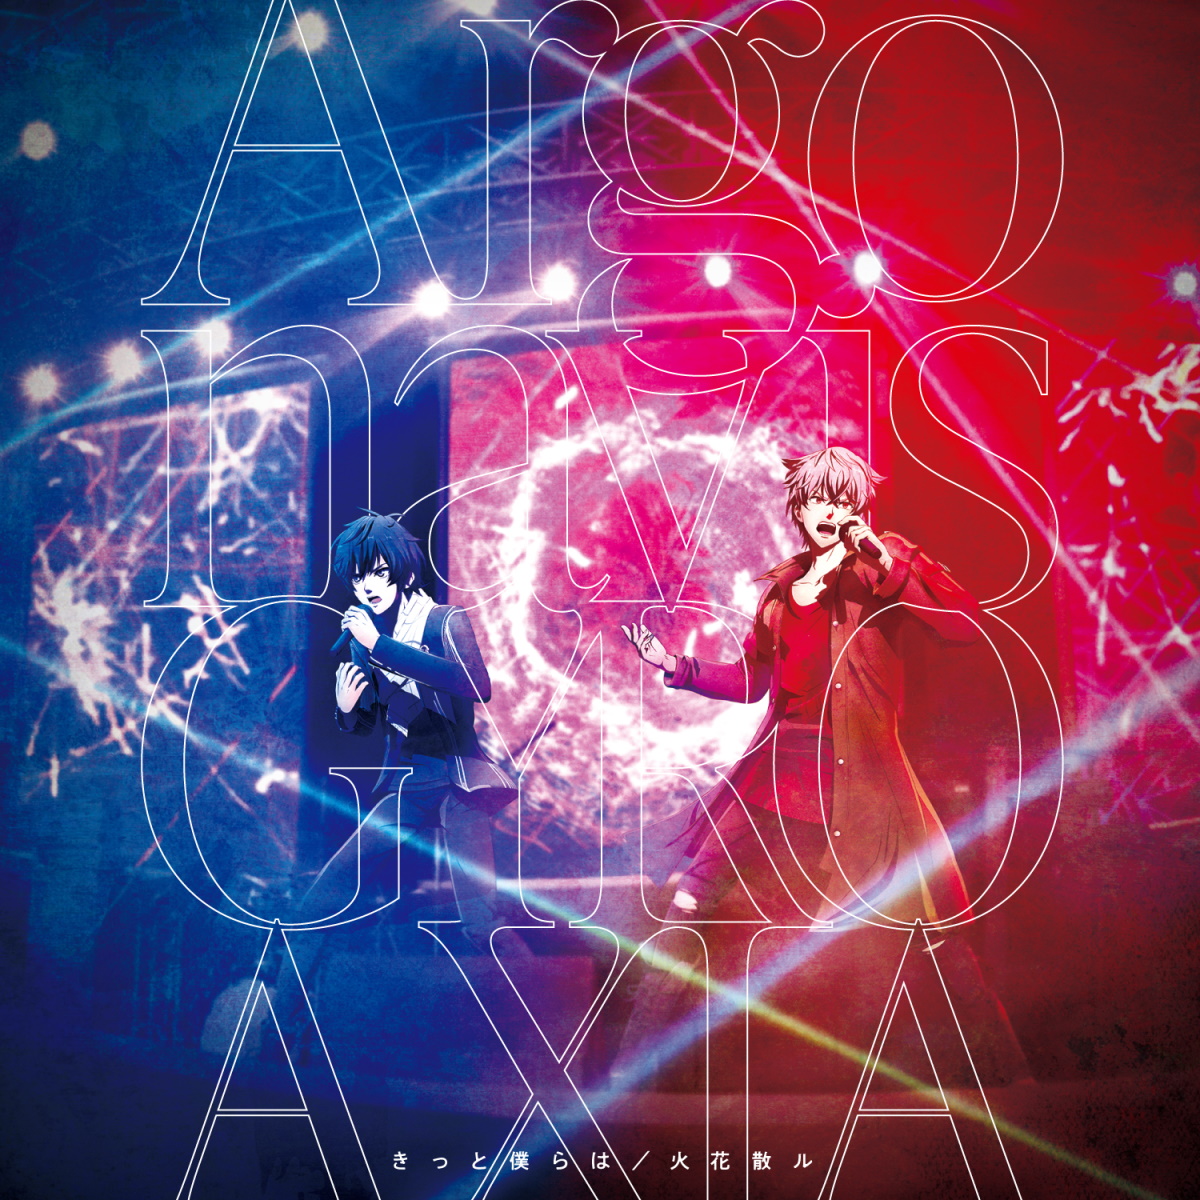 Cover for『Argonavis - Root of Love』from the release『Kitto Bokura wa / Hibana Chiru』